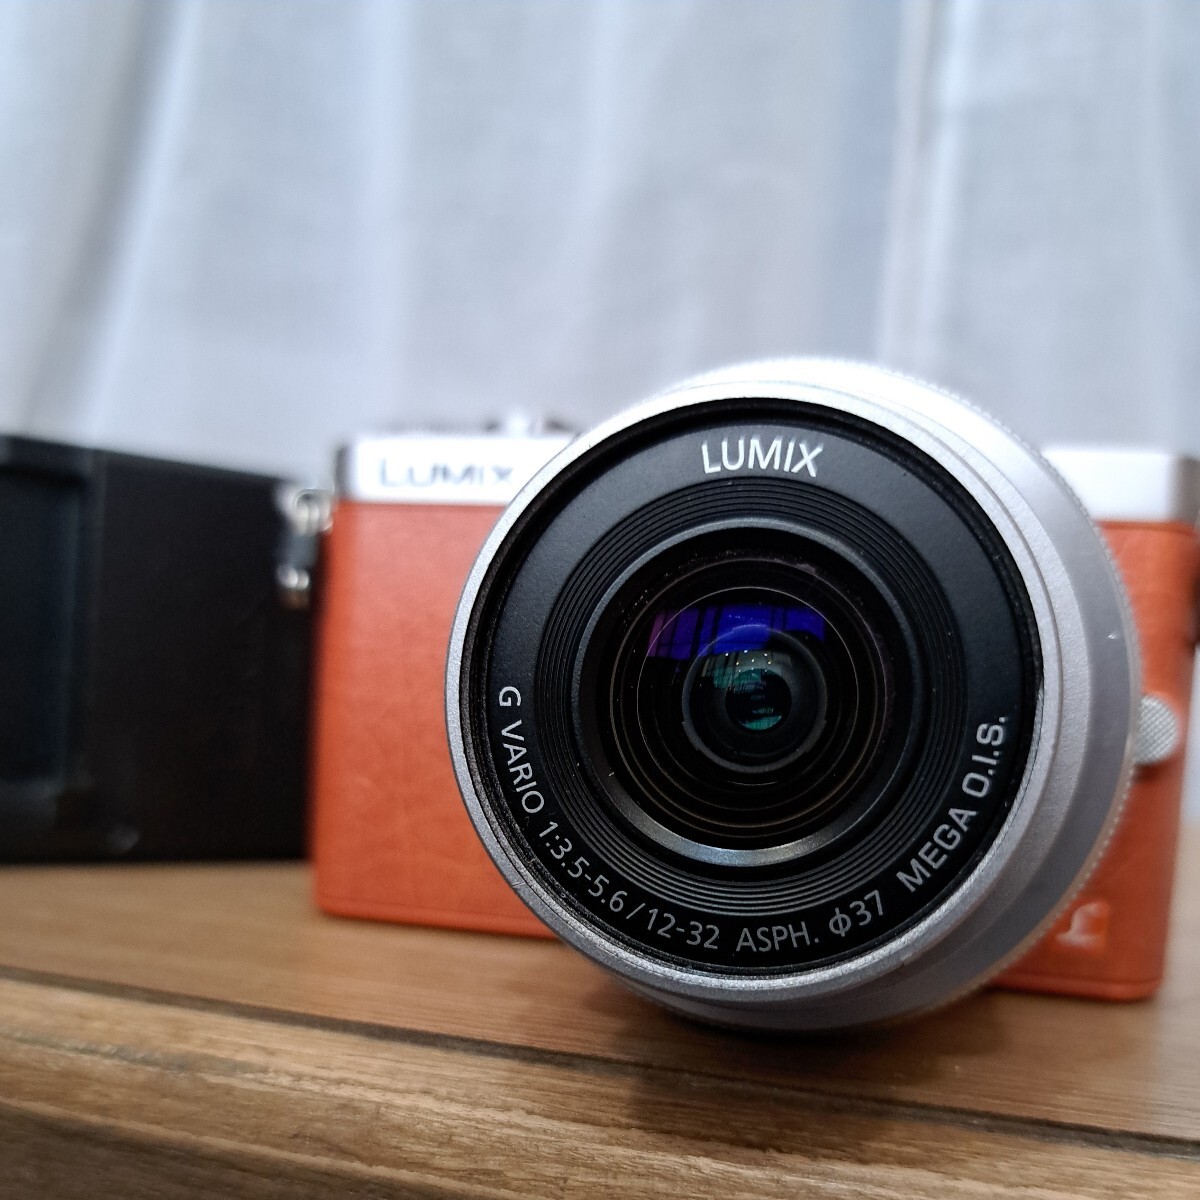 LUMIX Panasonic DMC-GM1 ミラーレス一眼 カメラ ボディ オレンジ Lumix DMC-GM1 12-32mm F3.5-5.6 asph g vario panaの画像2